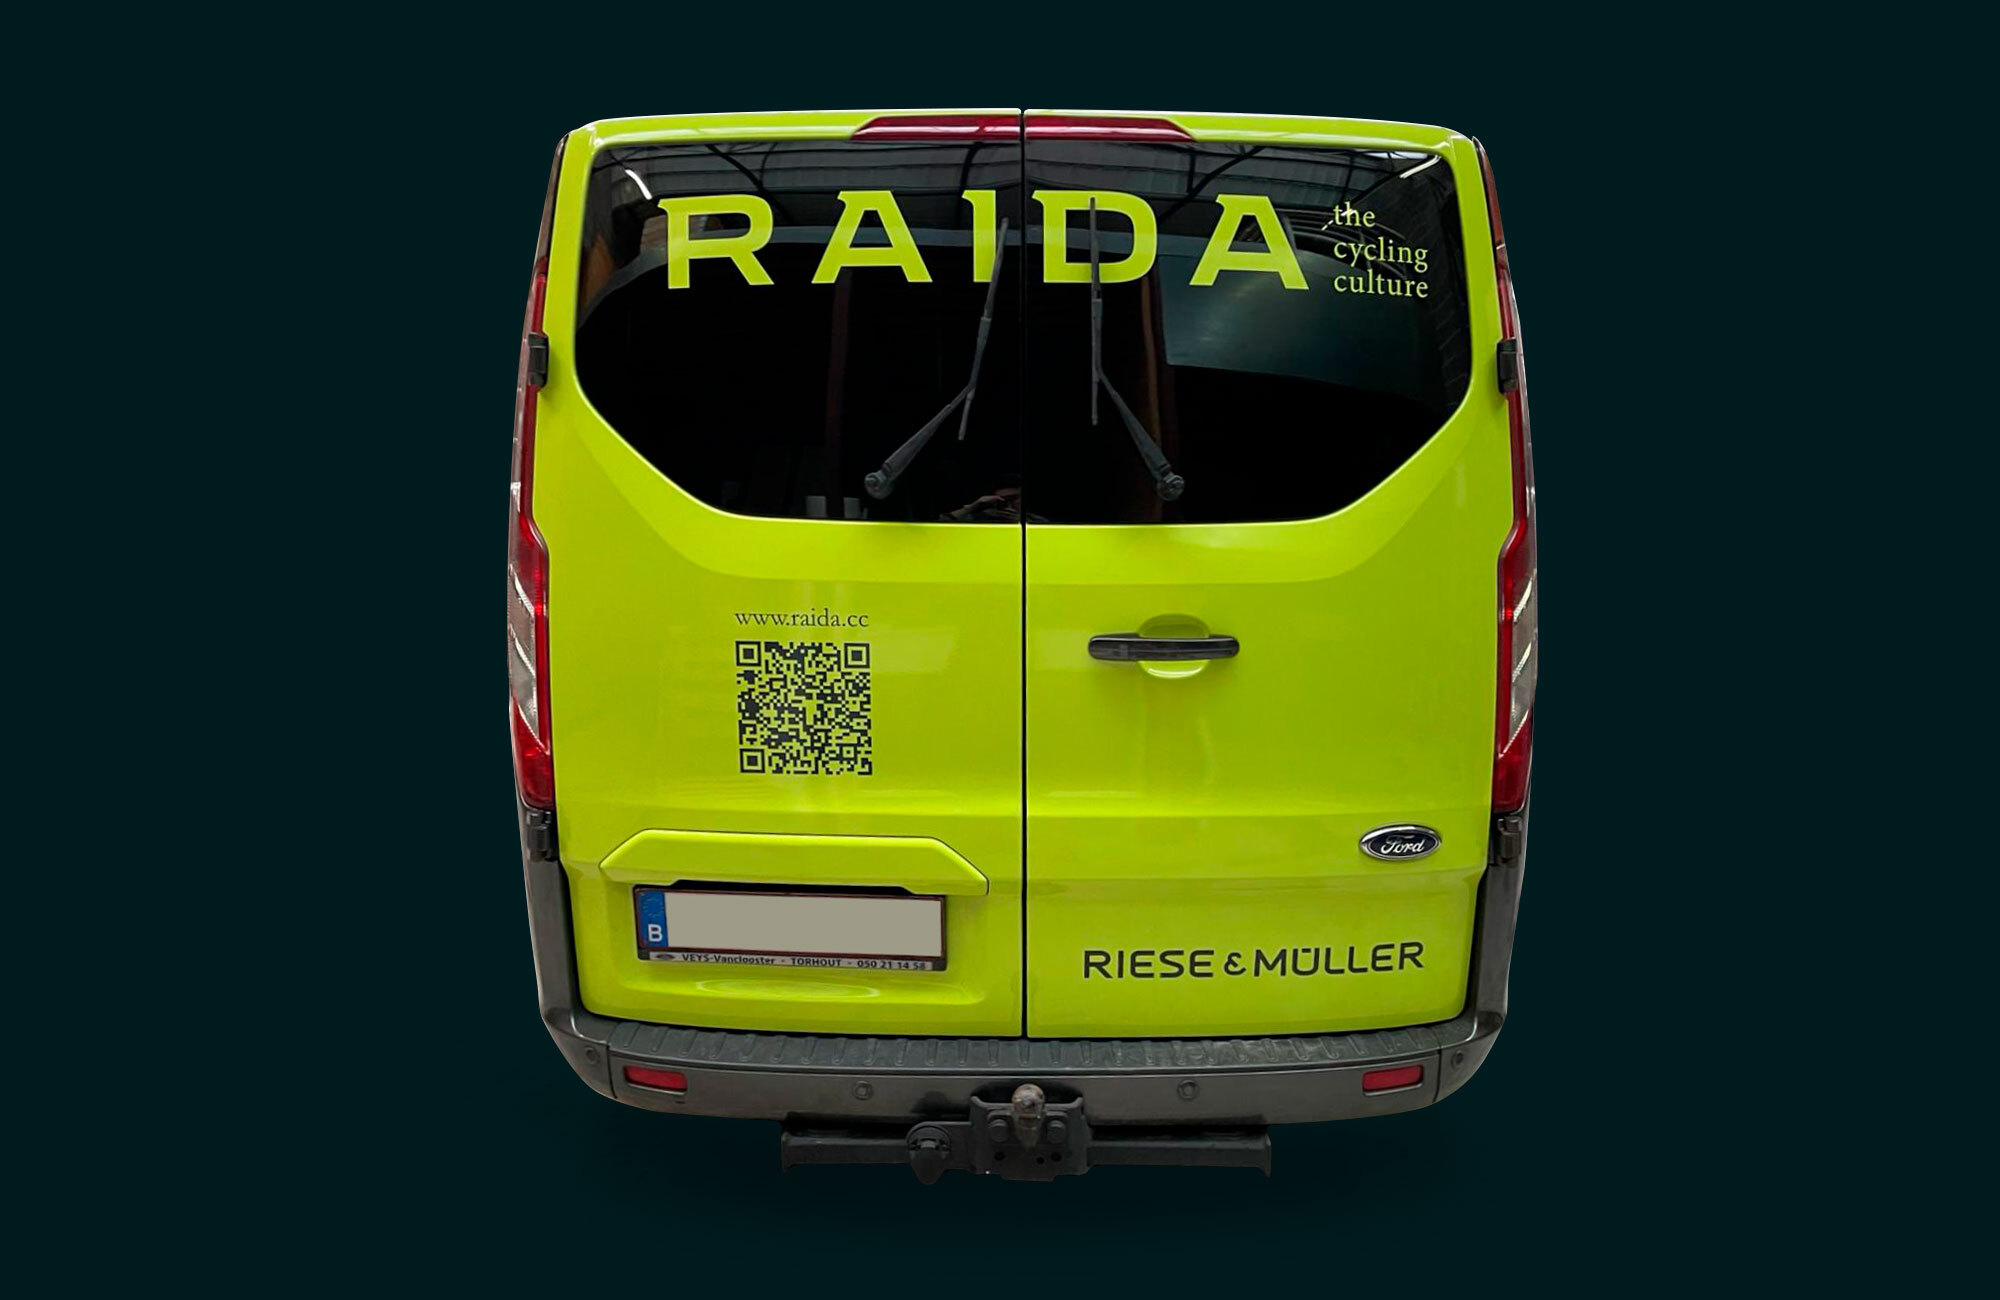 raida-web-01.jpg